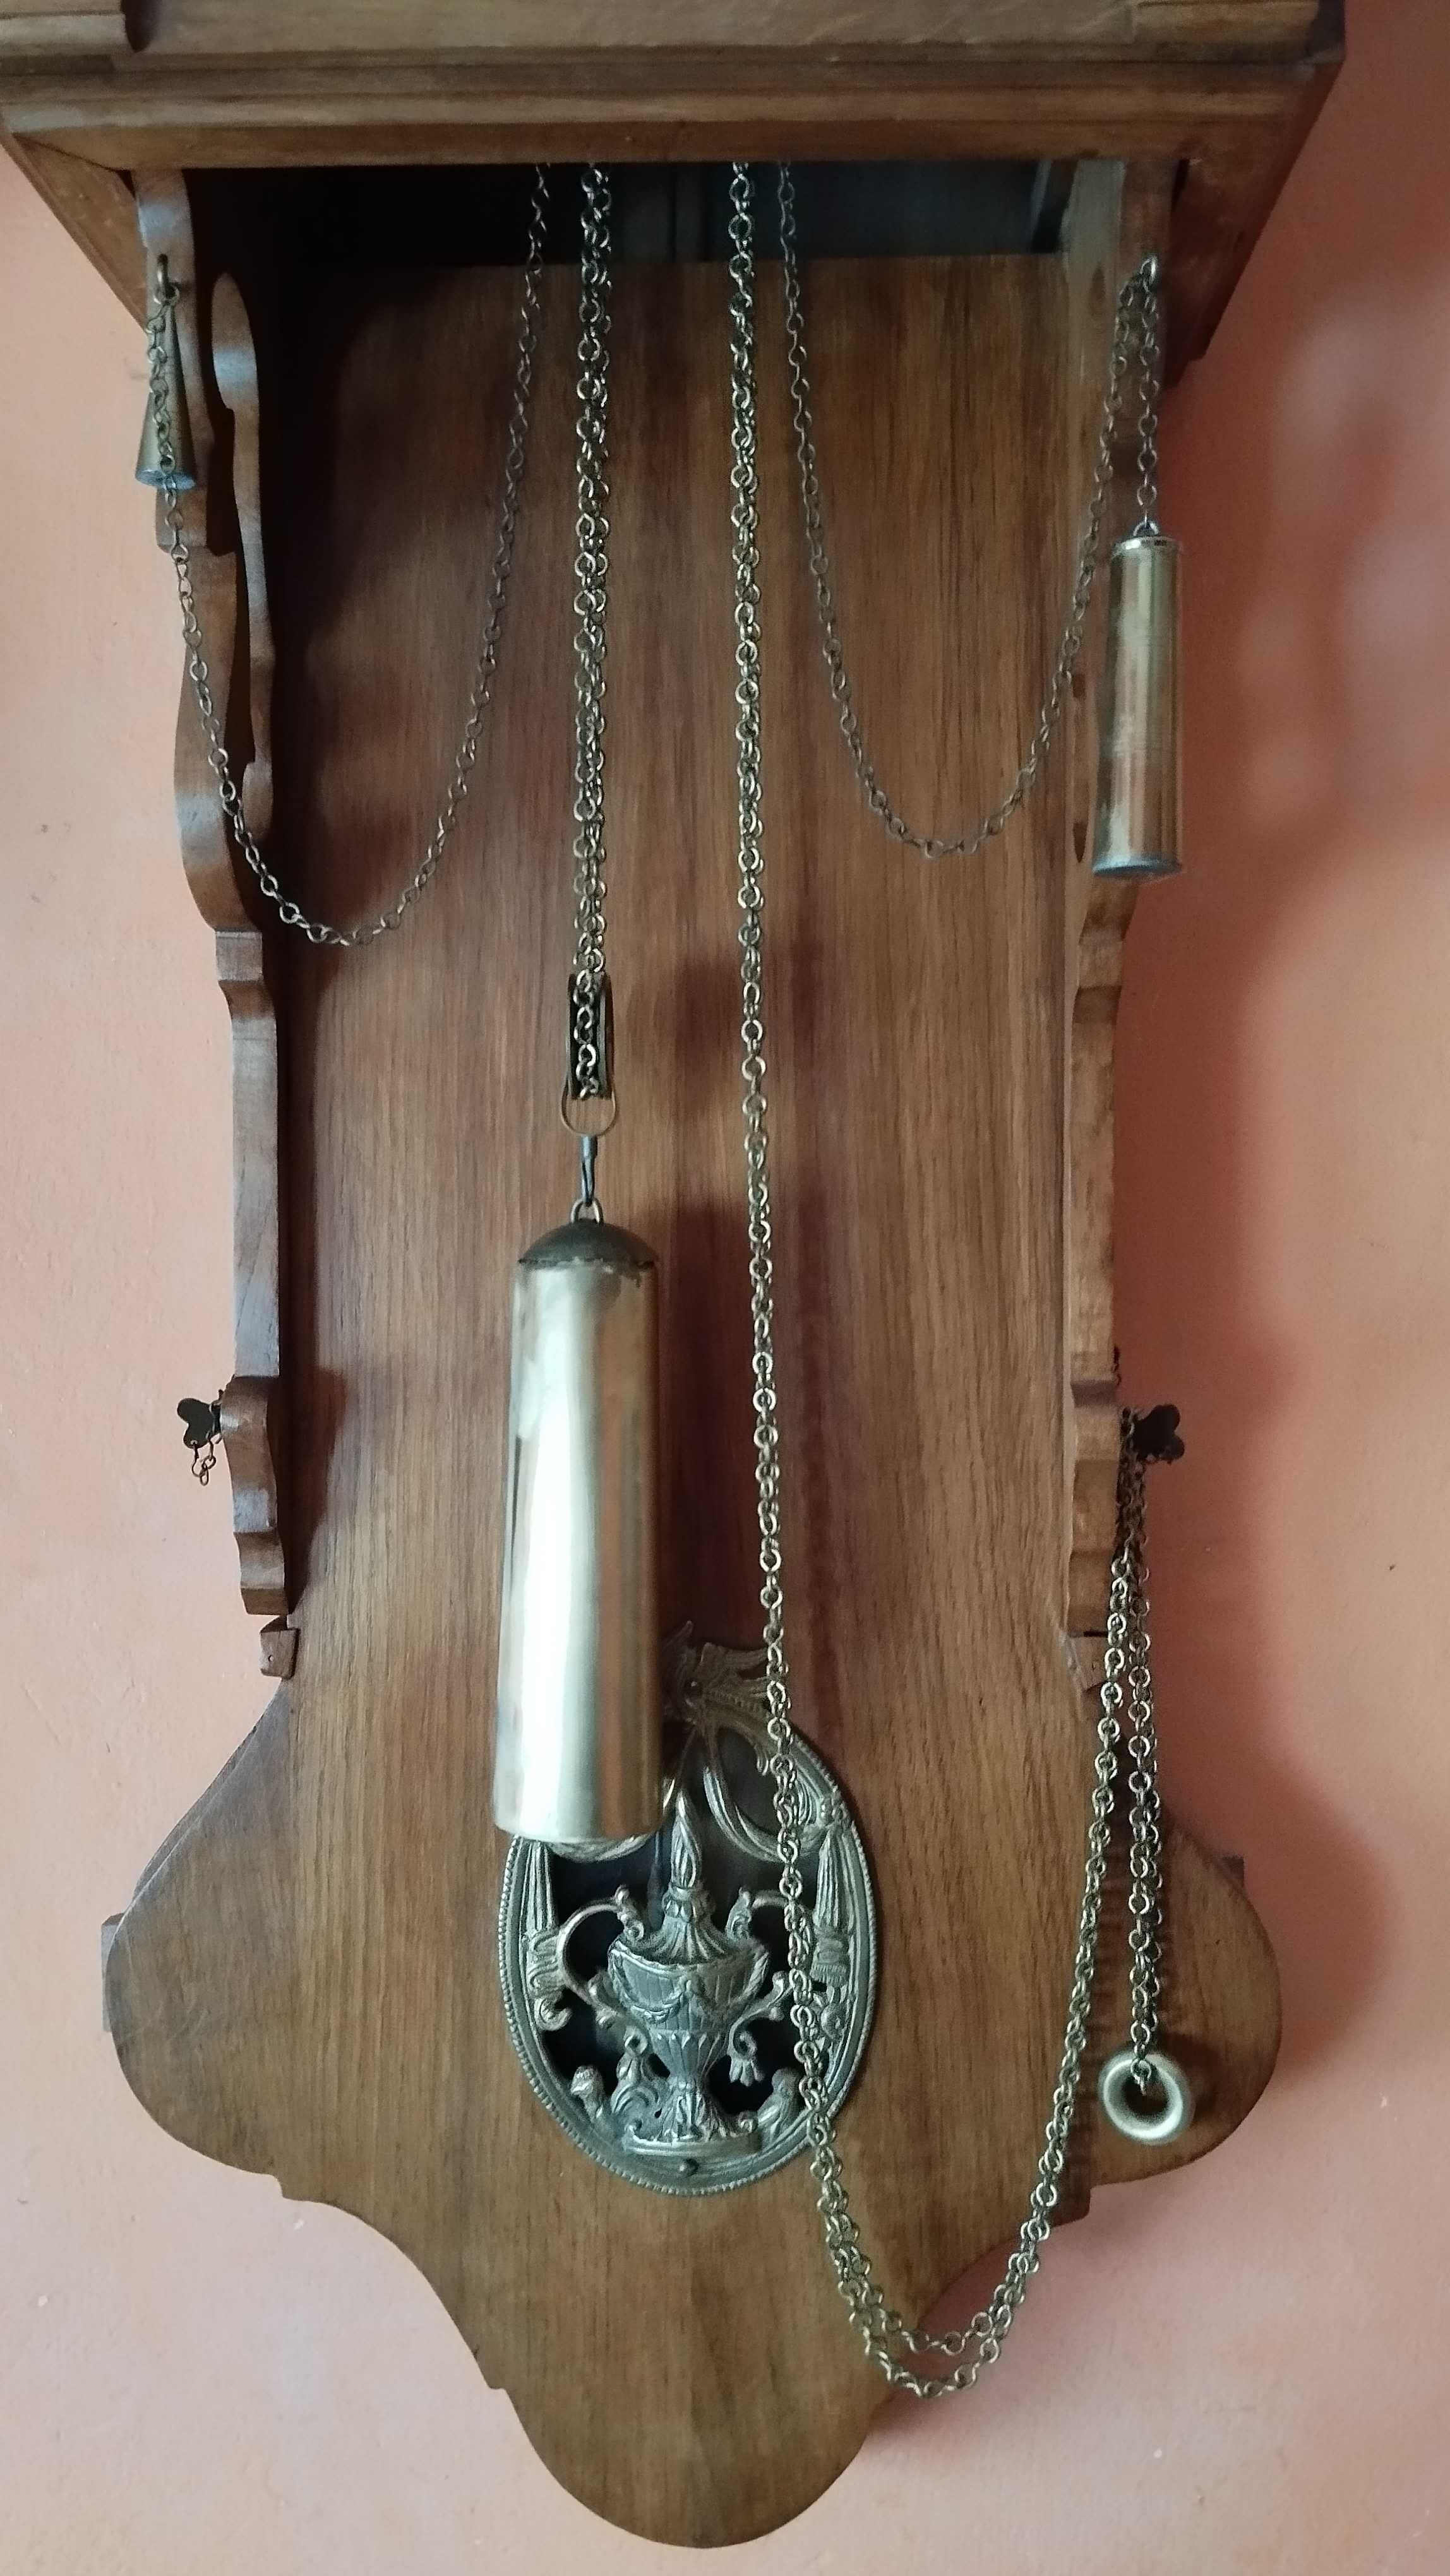 Zegar Fryzyjski jednowagowy z XIX wieku z budzikiem.